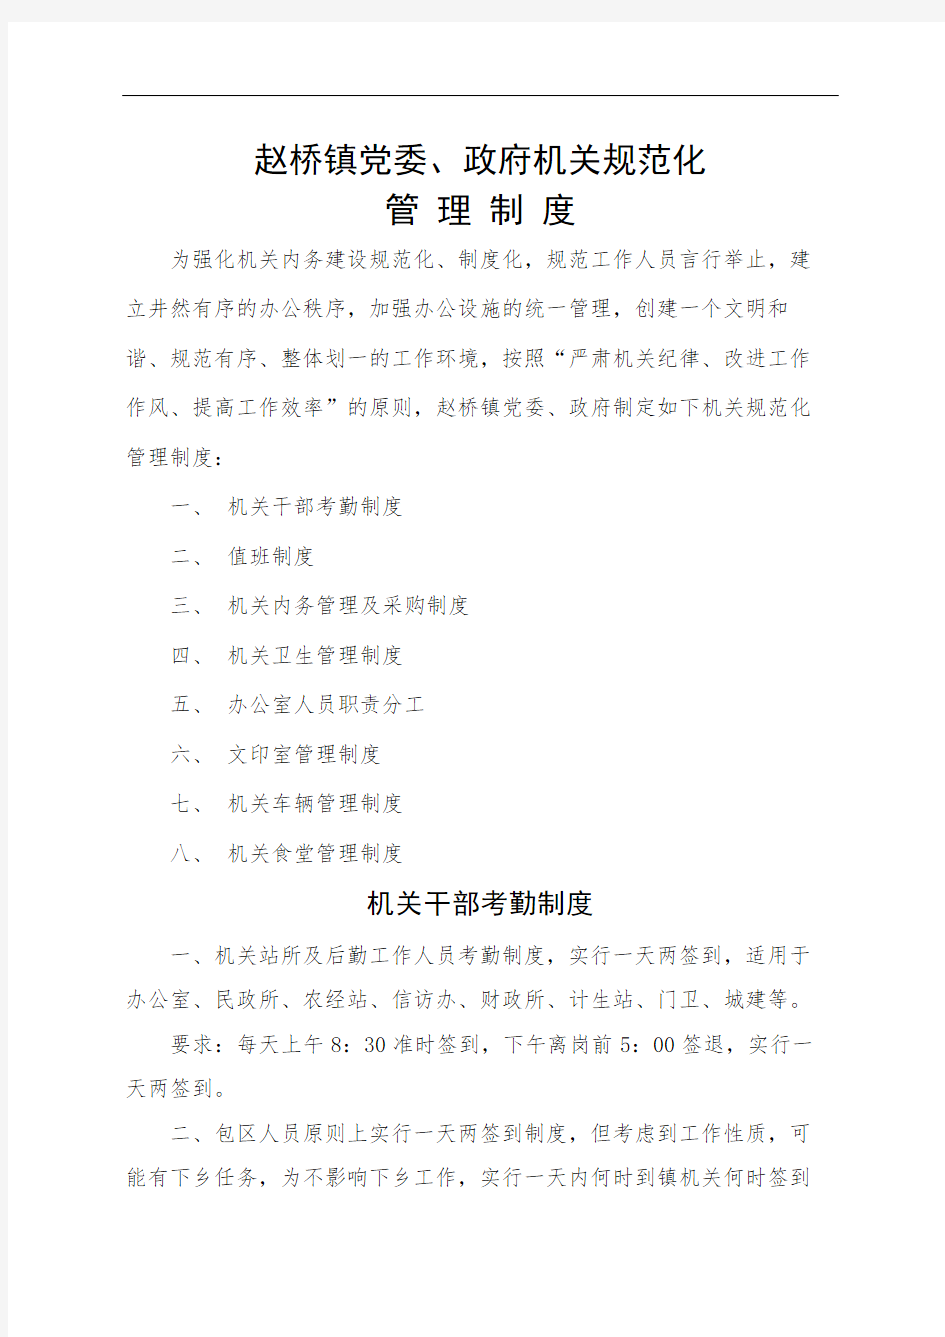 赵桥镇党委政府机关规范化管理规定